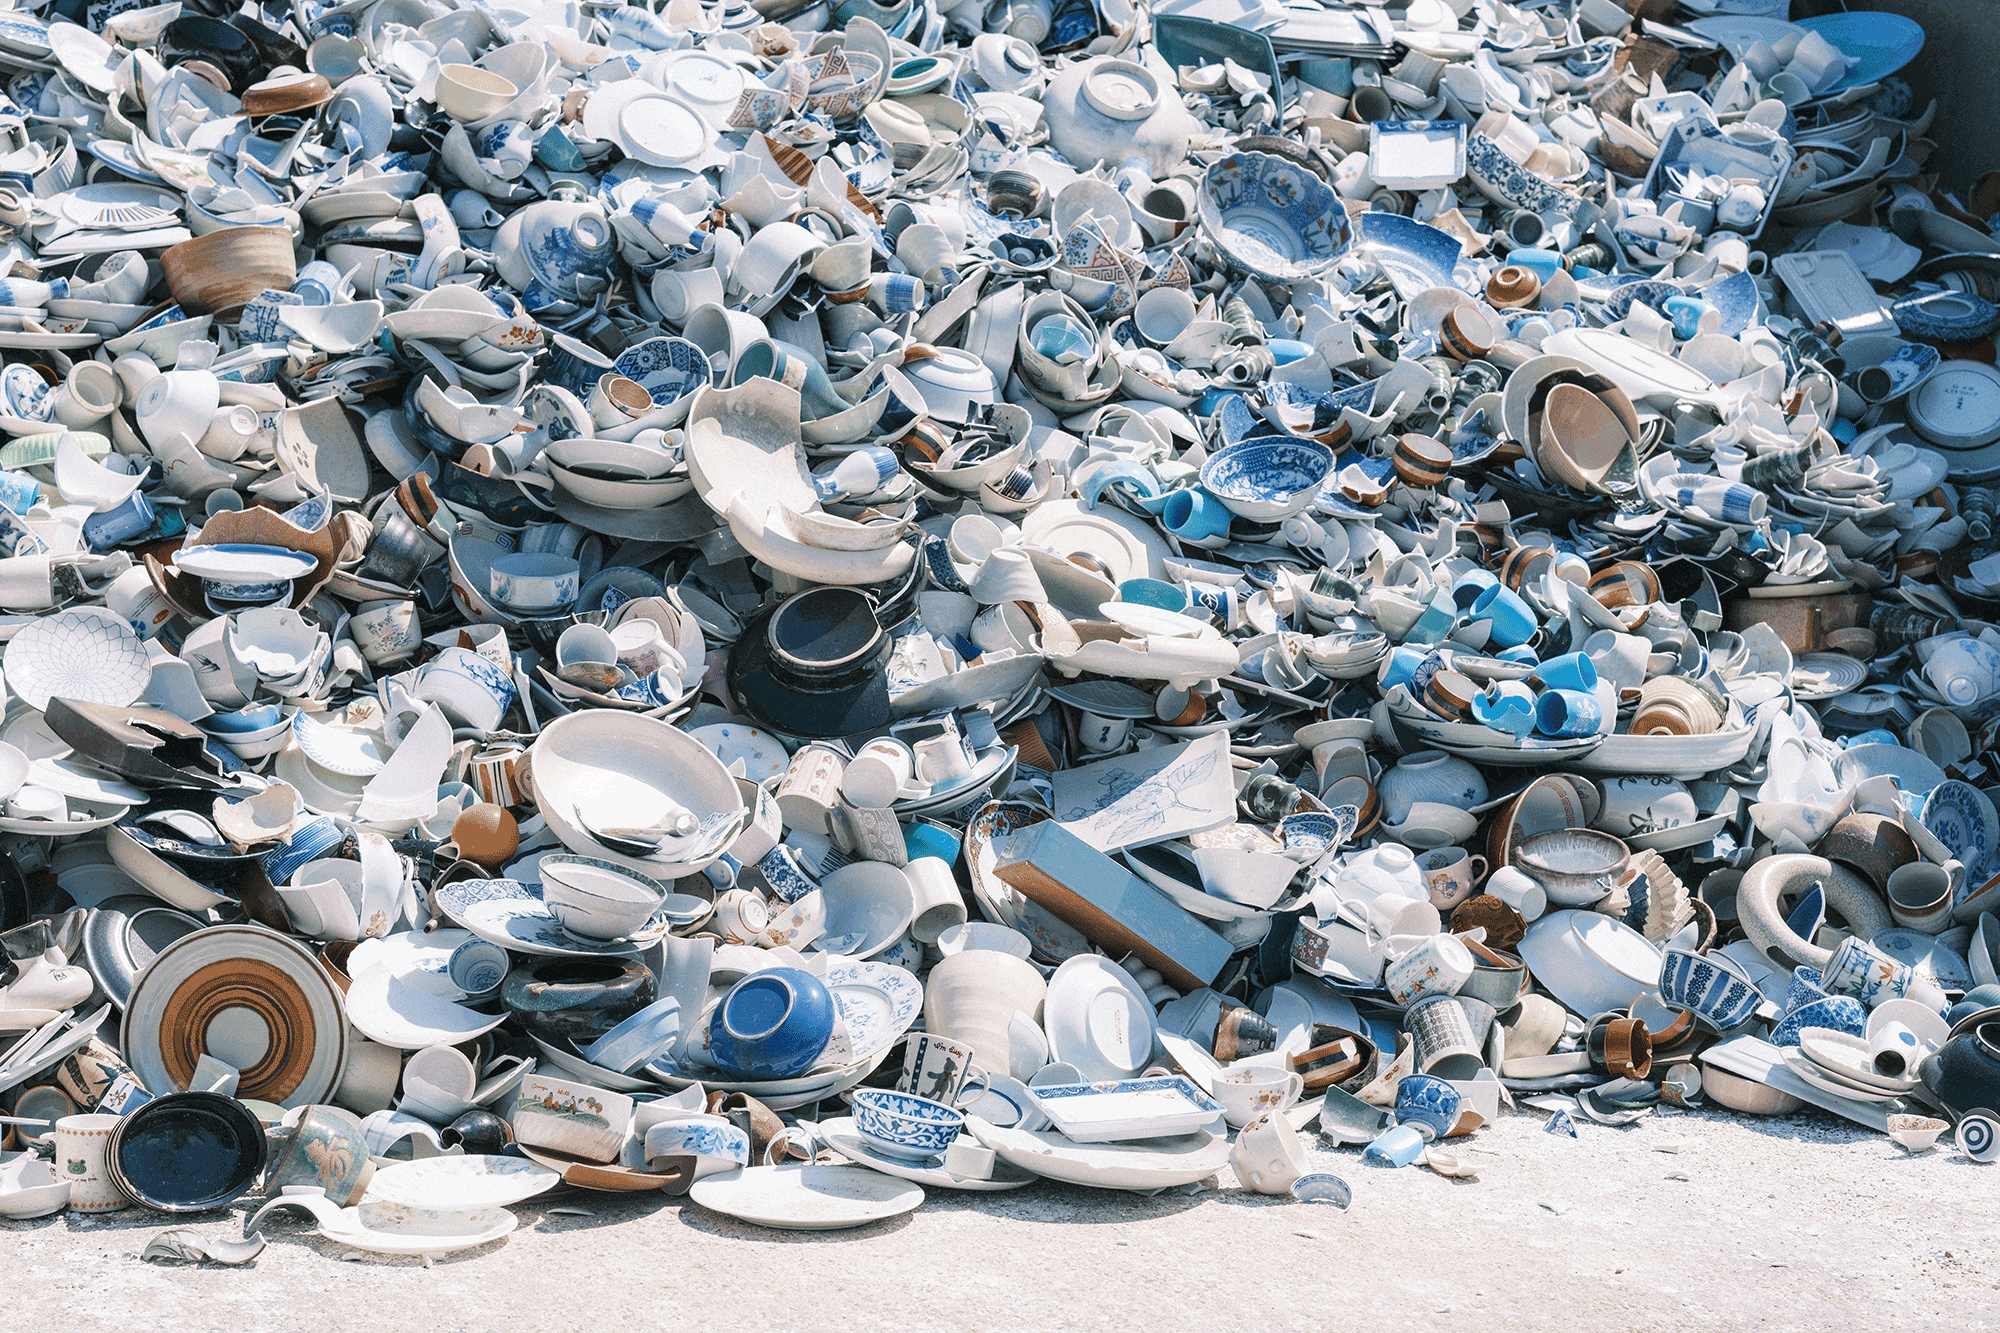 【窯元インタビュー】廃棄される食器をリサイクルし、原料枯渇の問題と向き合う。リサイクル土の「カップ」ができるまで